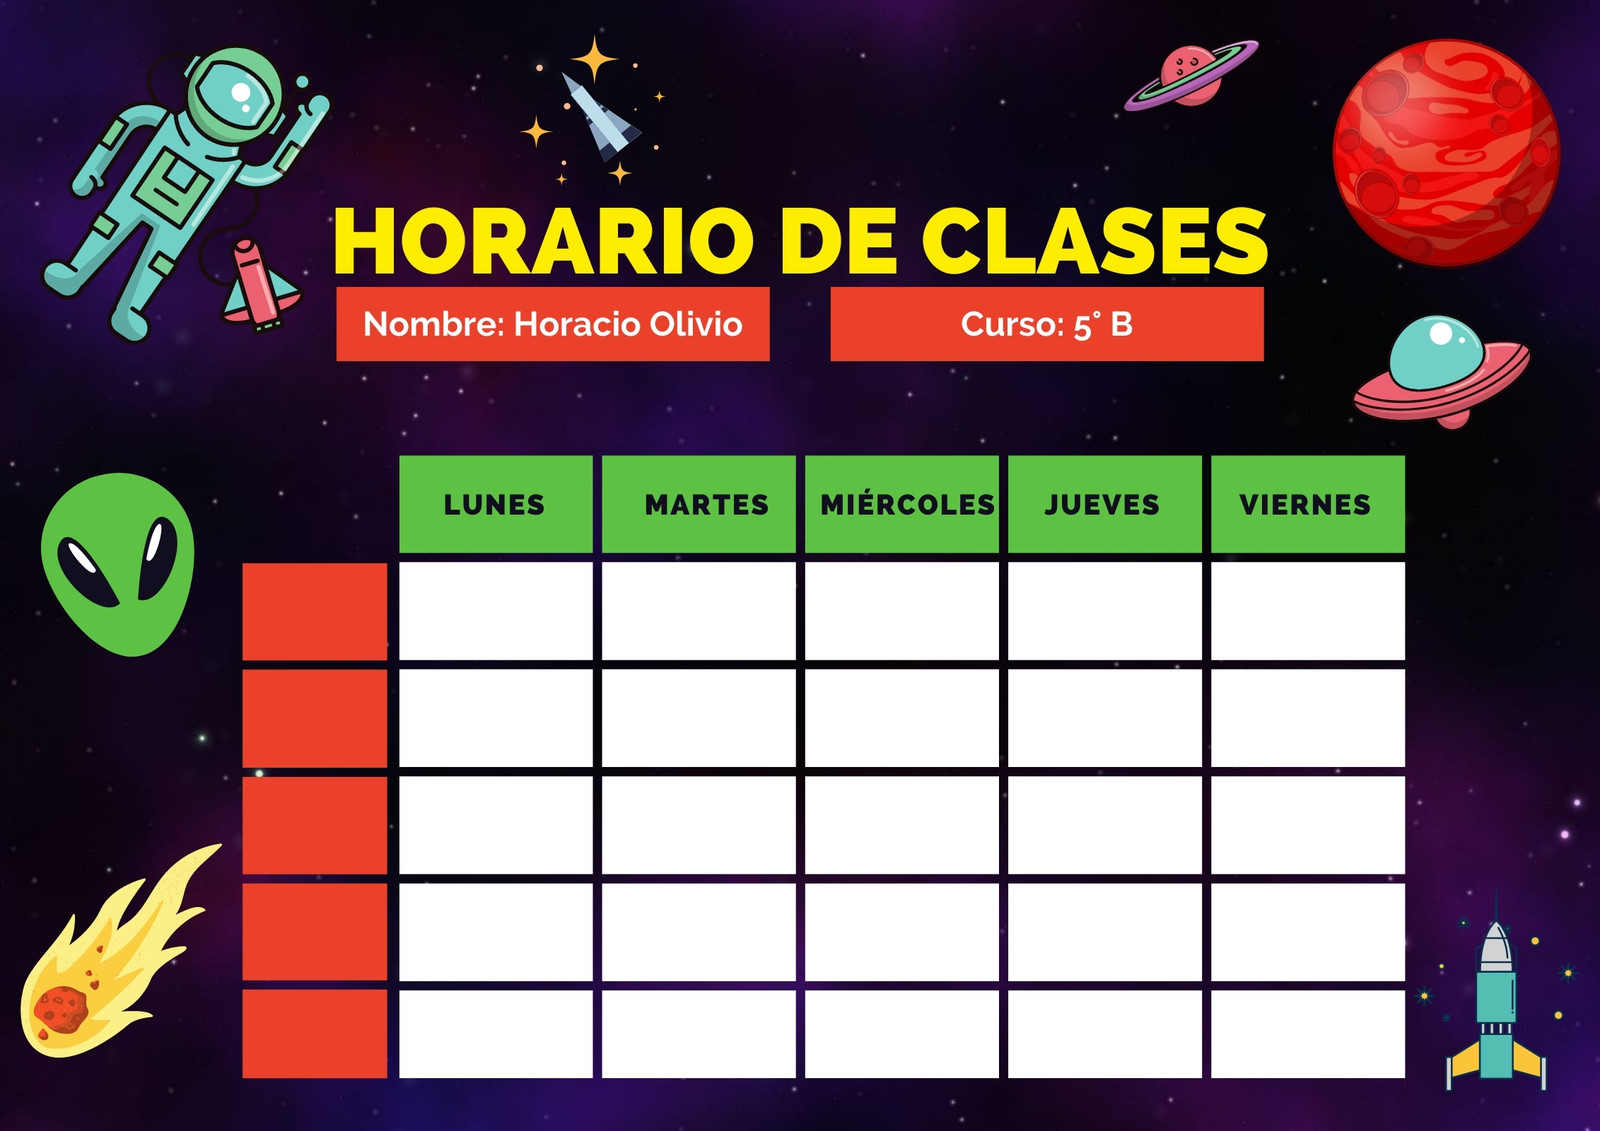 Web Para Hacer Horarios Plantillas para crear tu horario de clases gratis | Canva